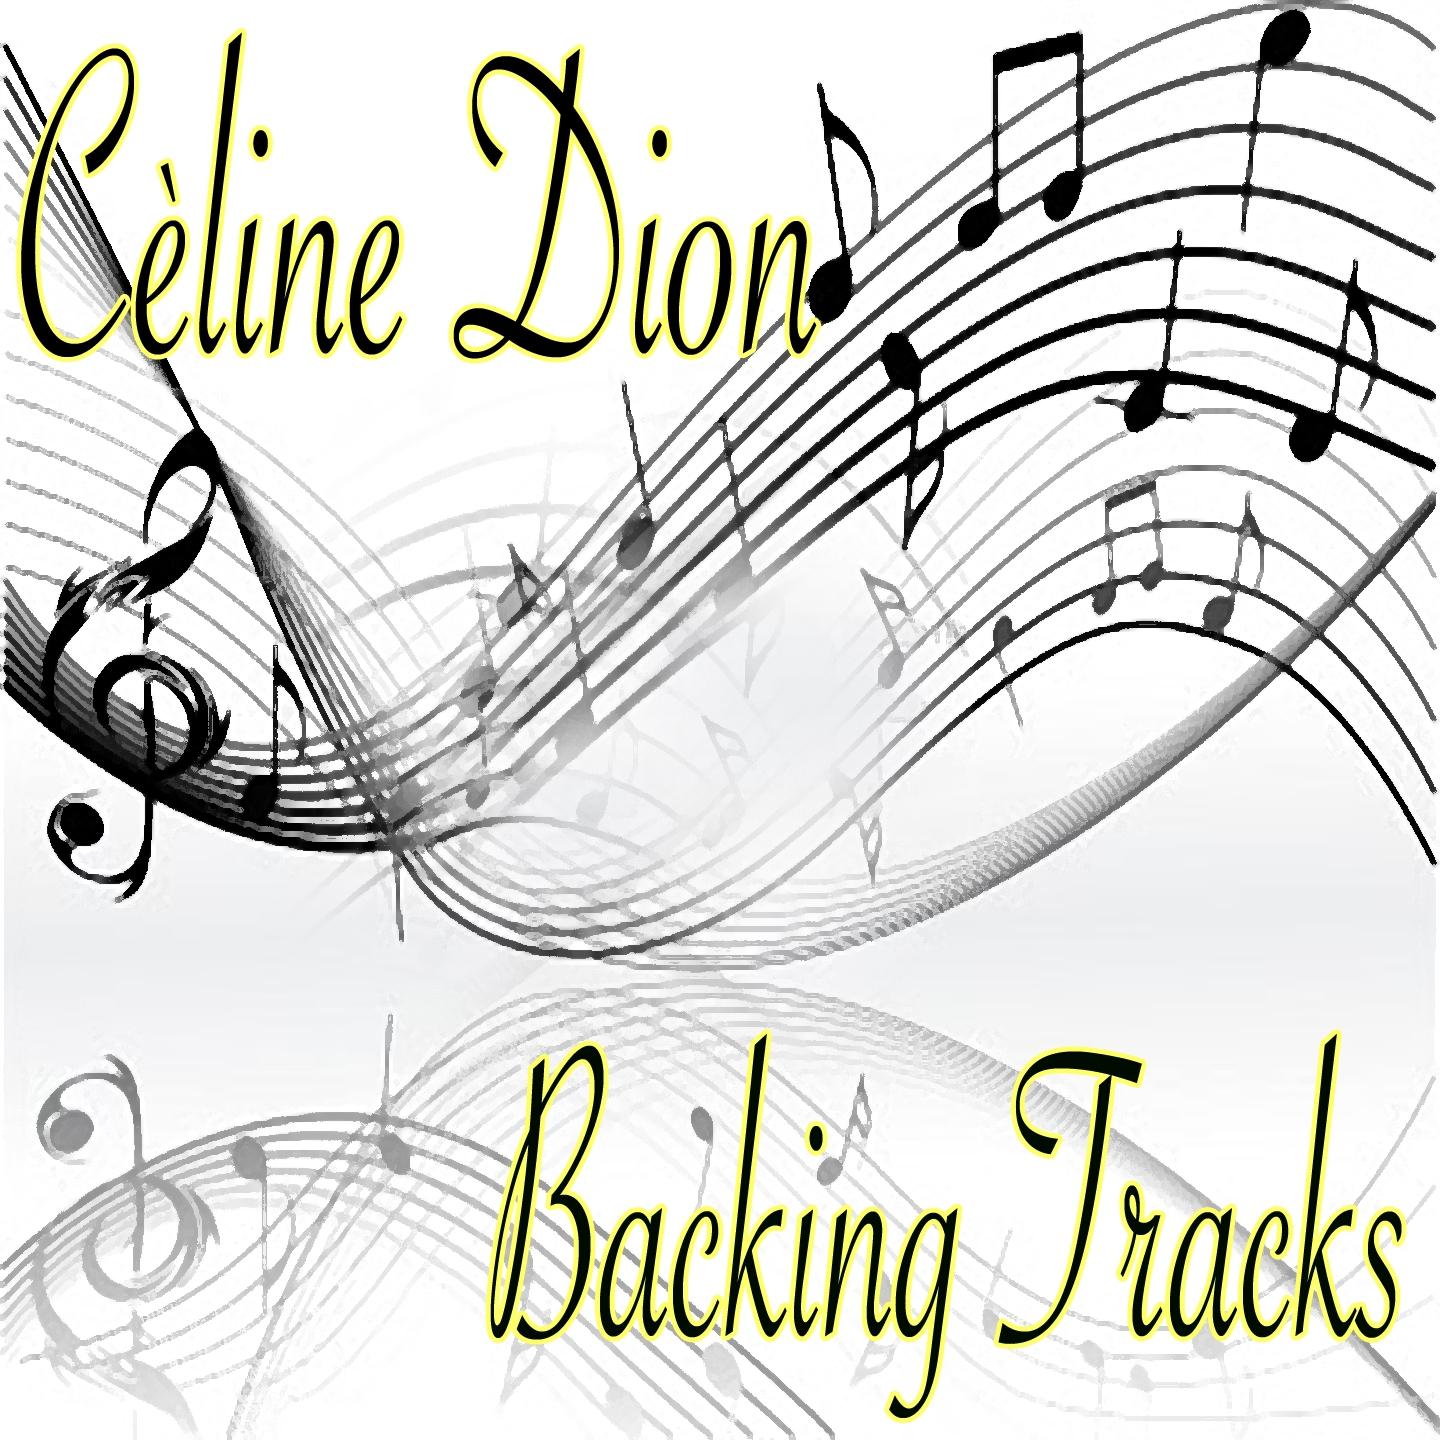 Ce line Dion Backing Tracks